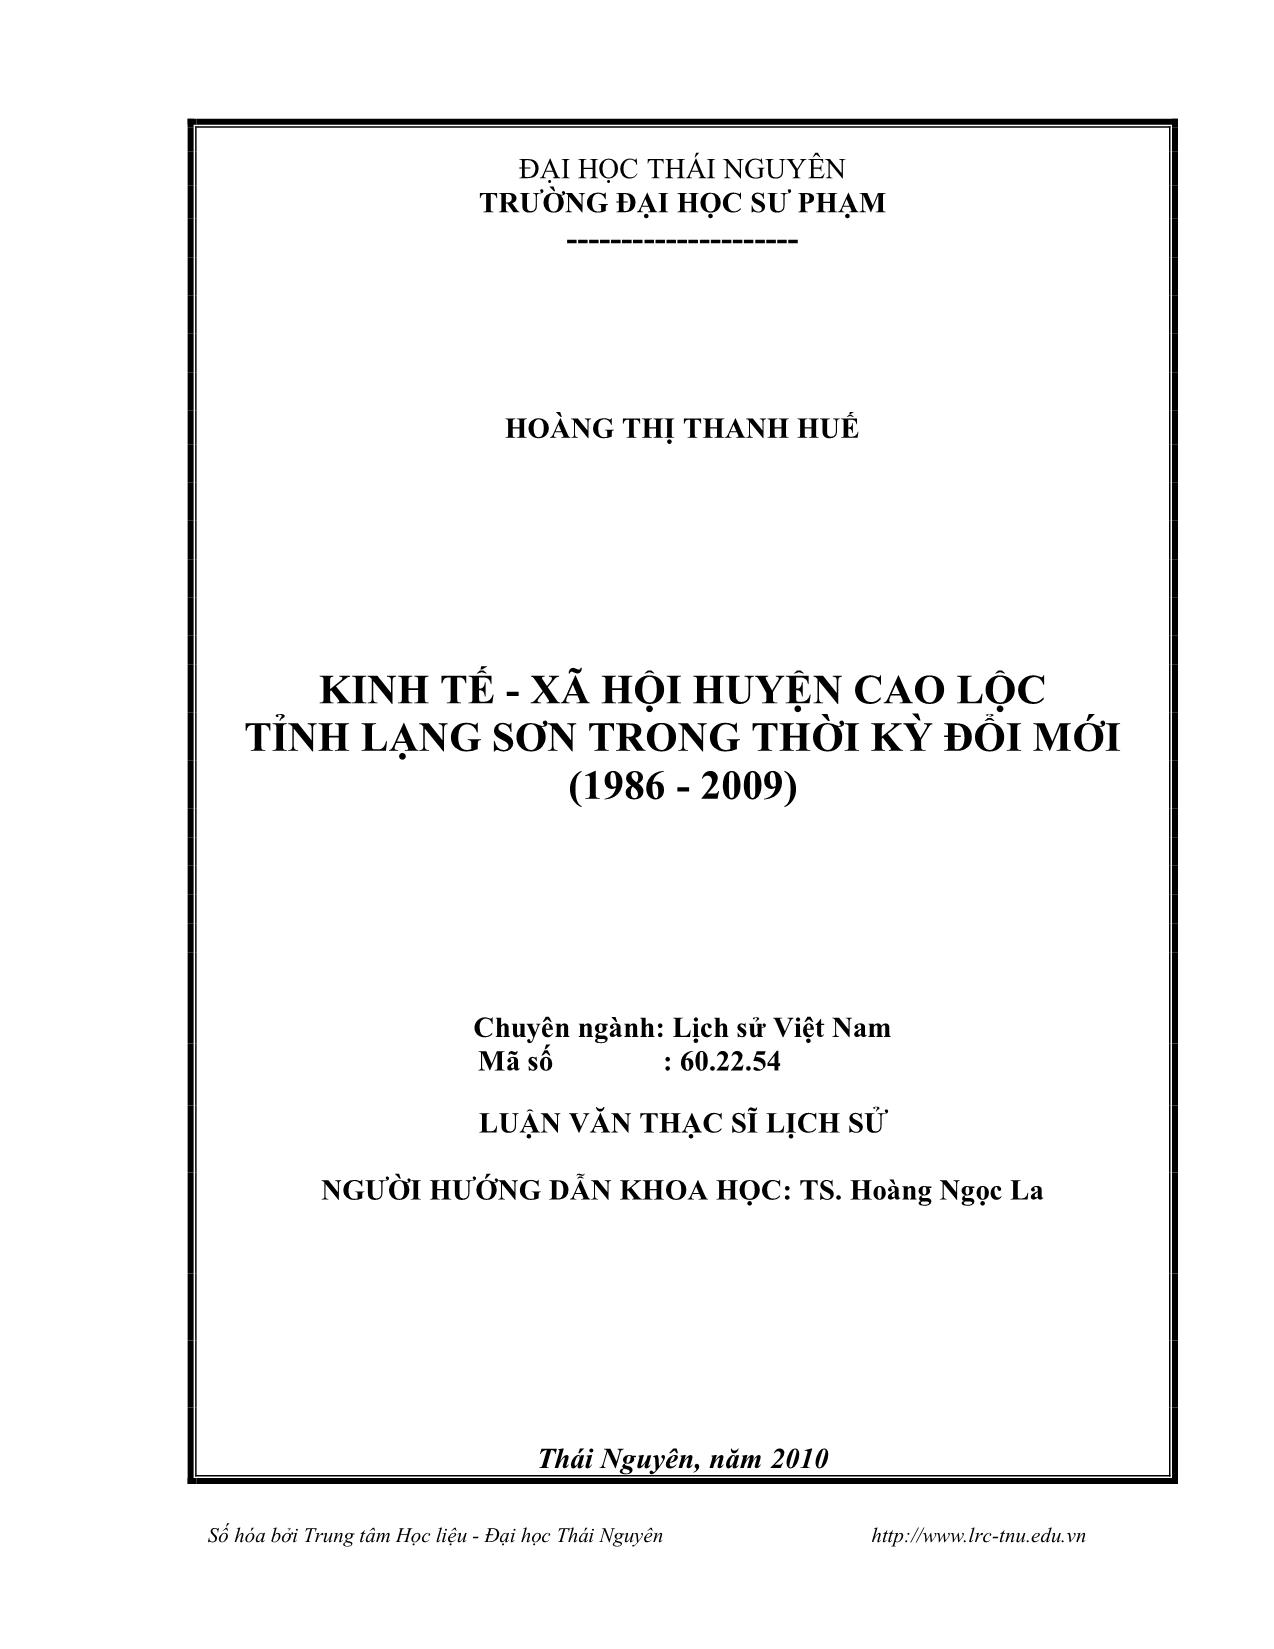 Luận văn Kinh tế - Xã hội huyện Cao Lộc, tỉnh Lạng Sơn trong thời kỳ đổi mới (1986-2009) trang 2